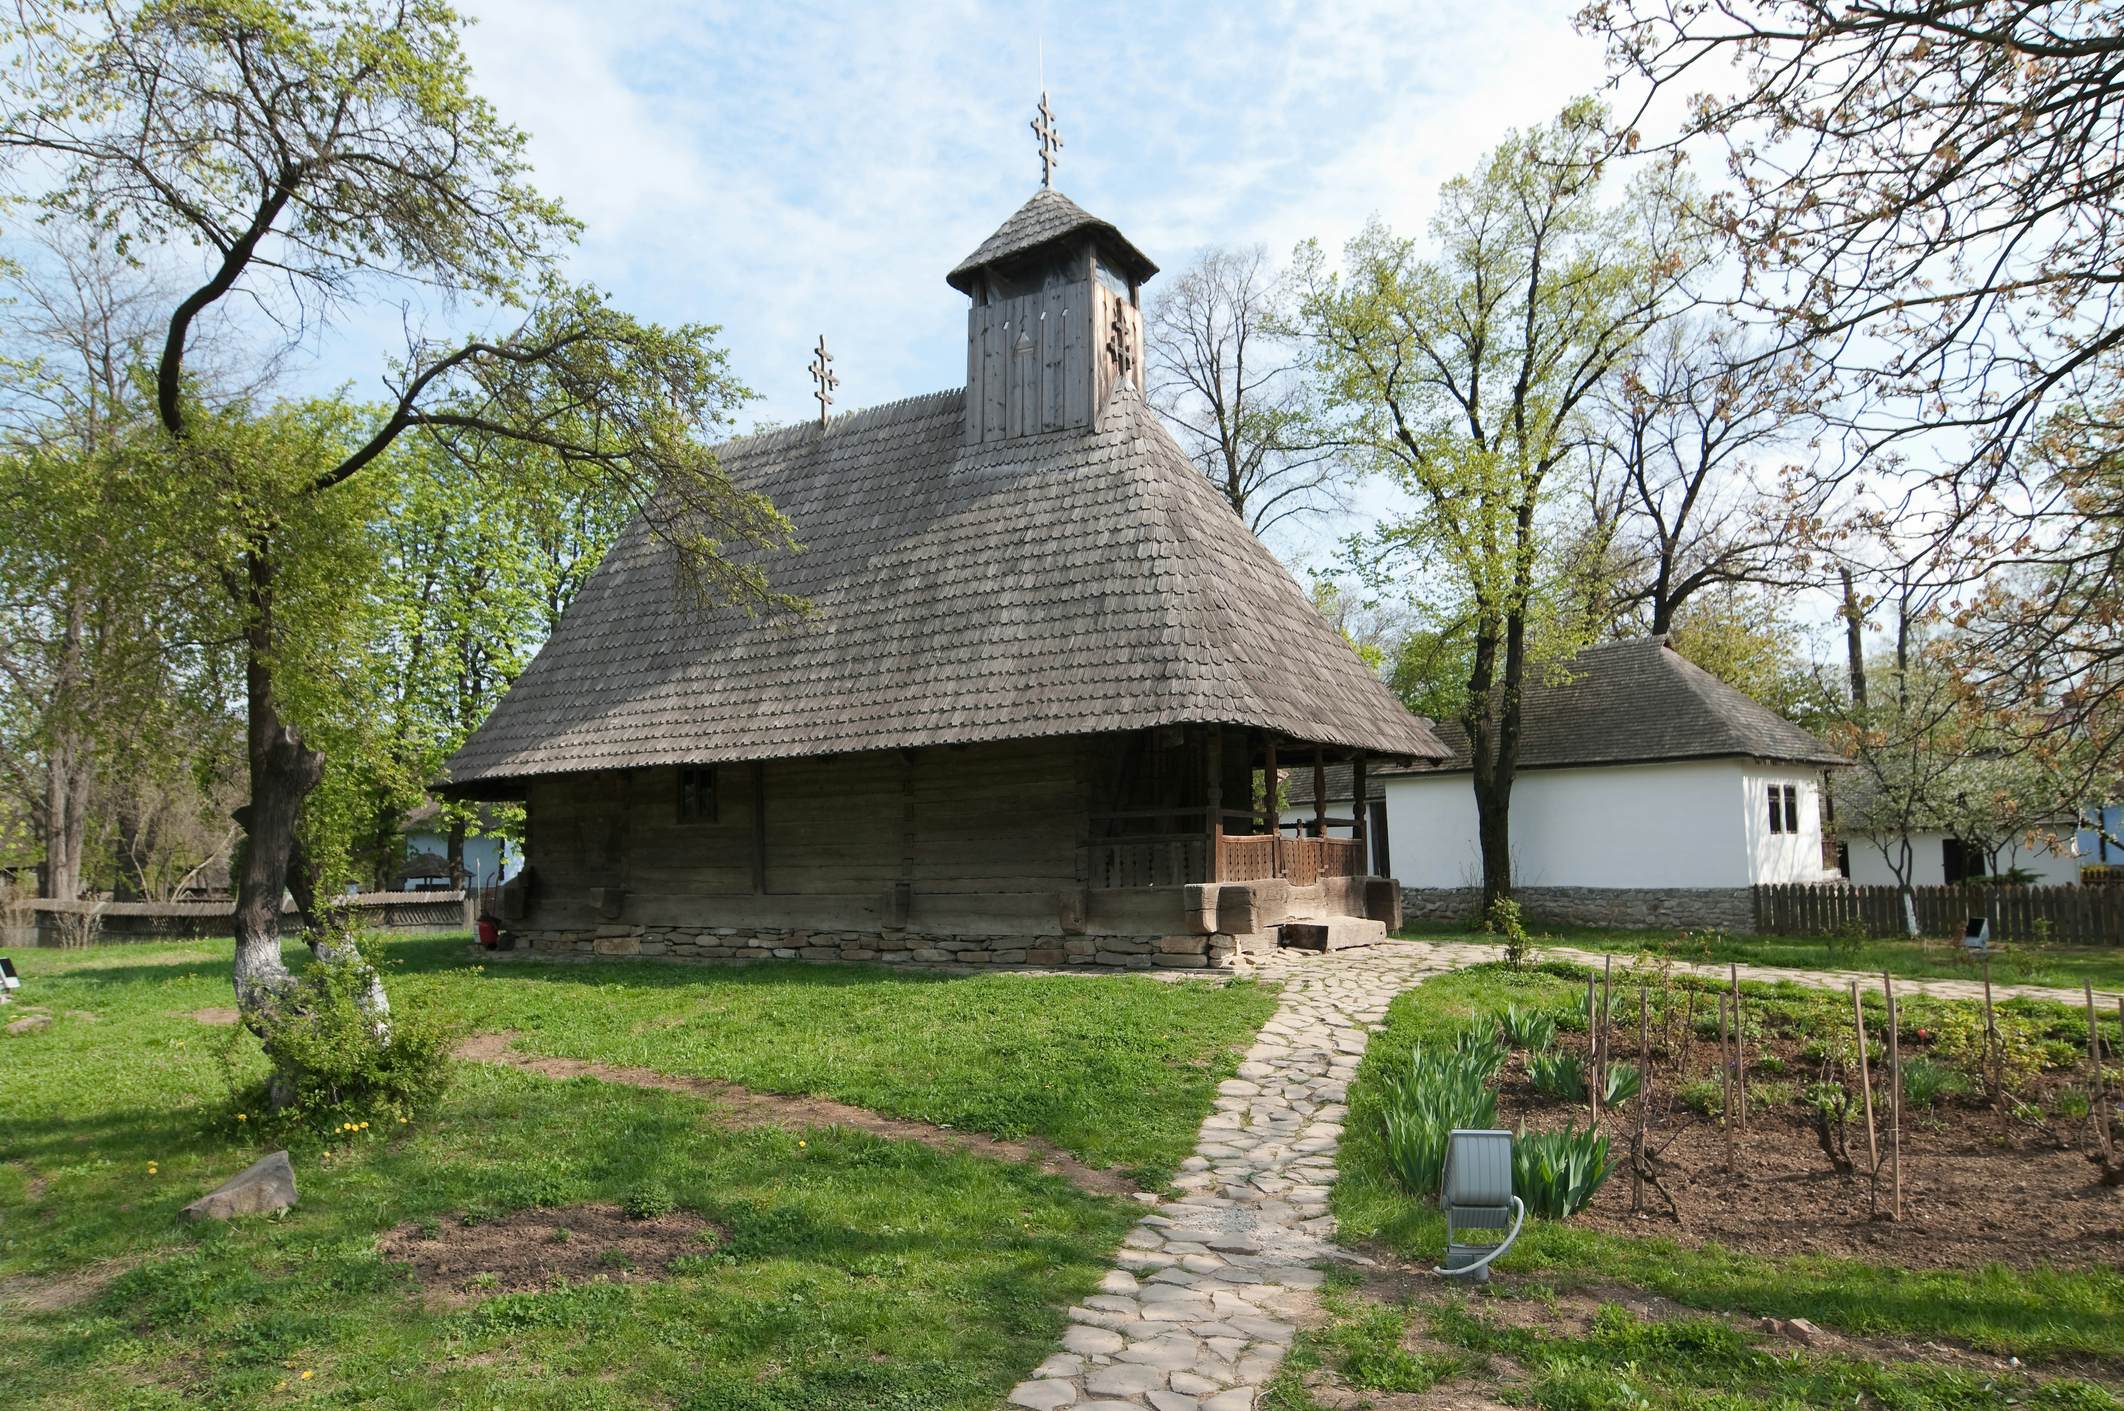 Muzeul Satului Dimitrie Gusti Bucuresti (Village Museum) image